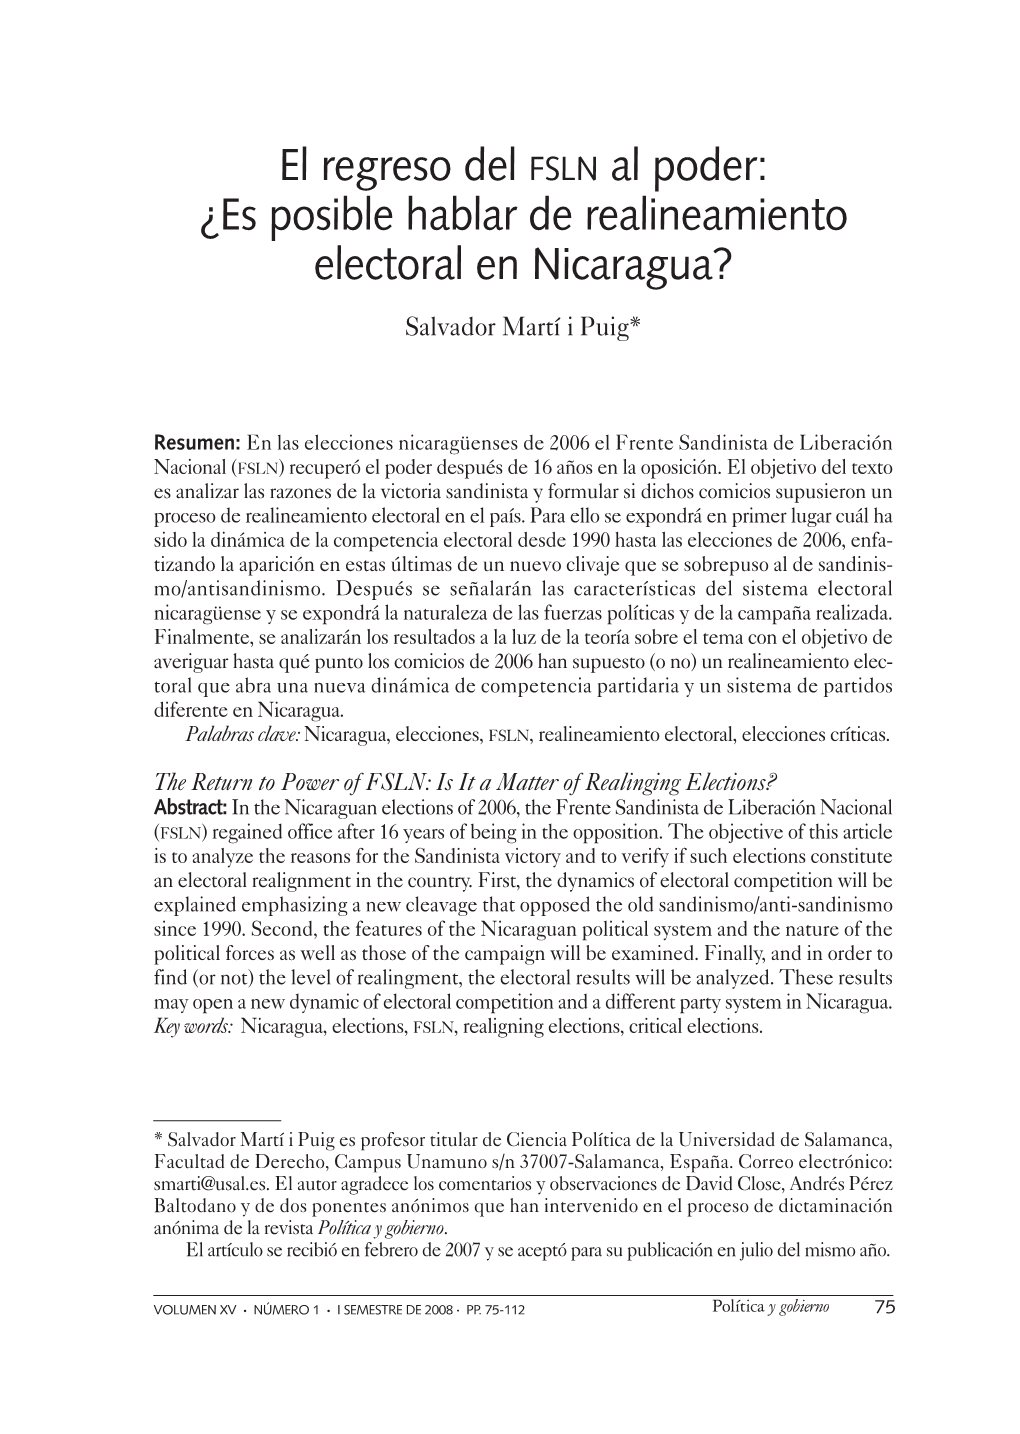 El Regreso Del FSLN Al Poder: ¿Es Posible Hablar De Realineamiento Electoral En Nicaragua? Salvador Martí I Puig*